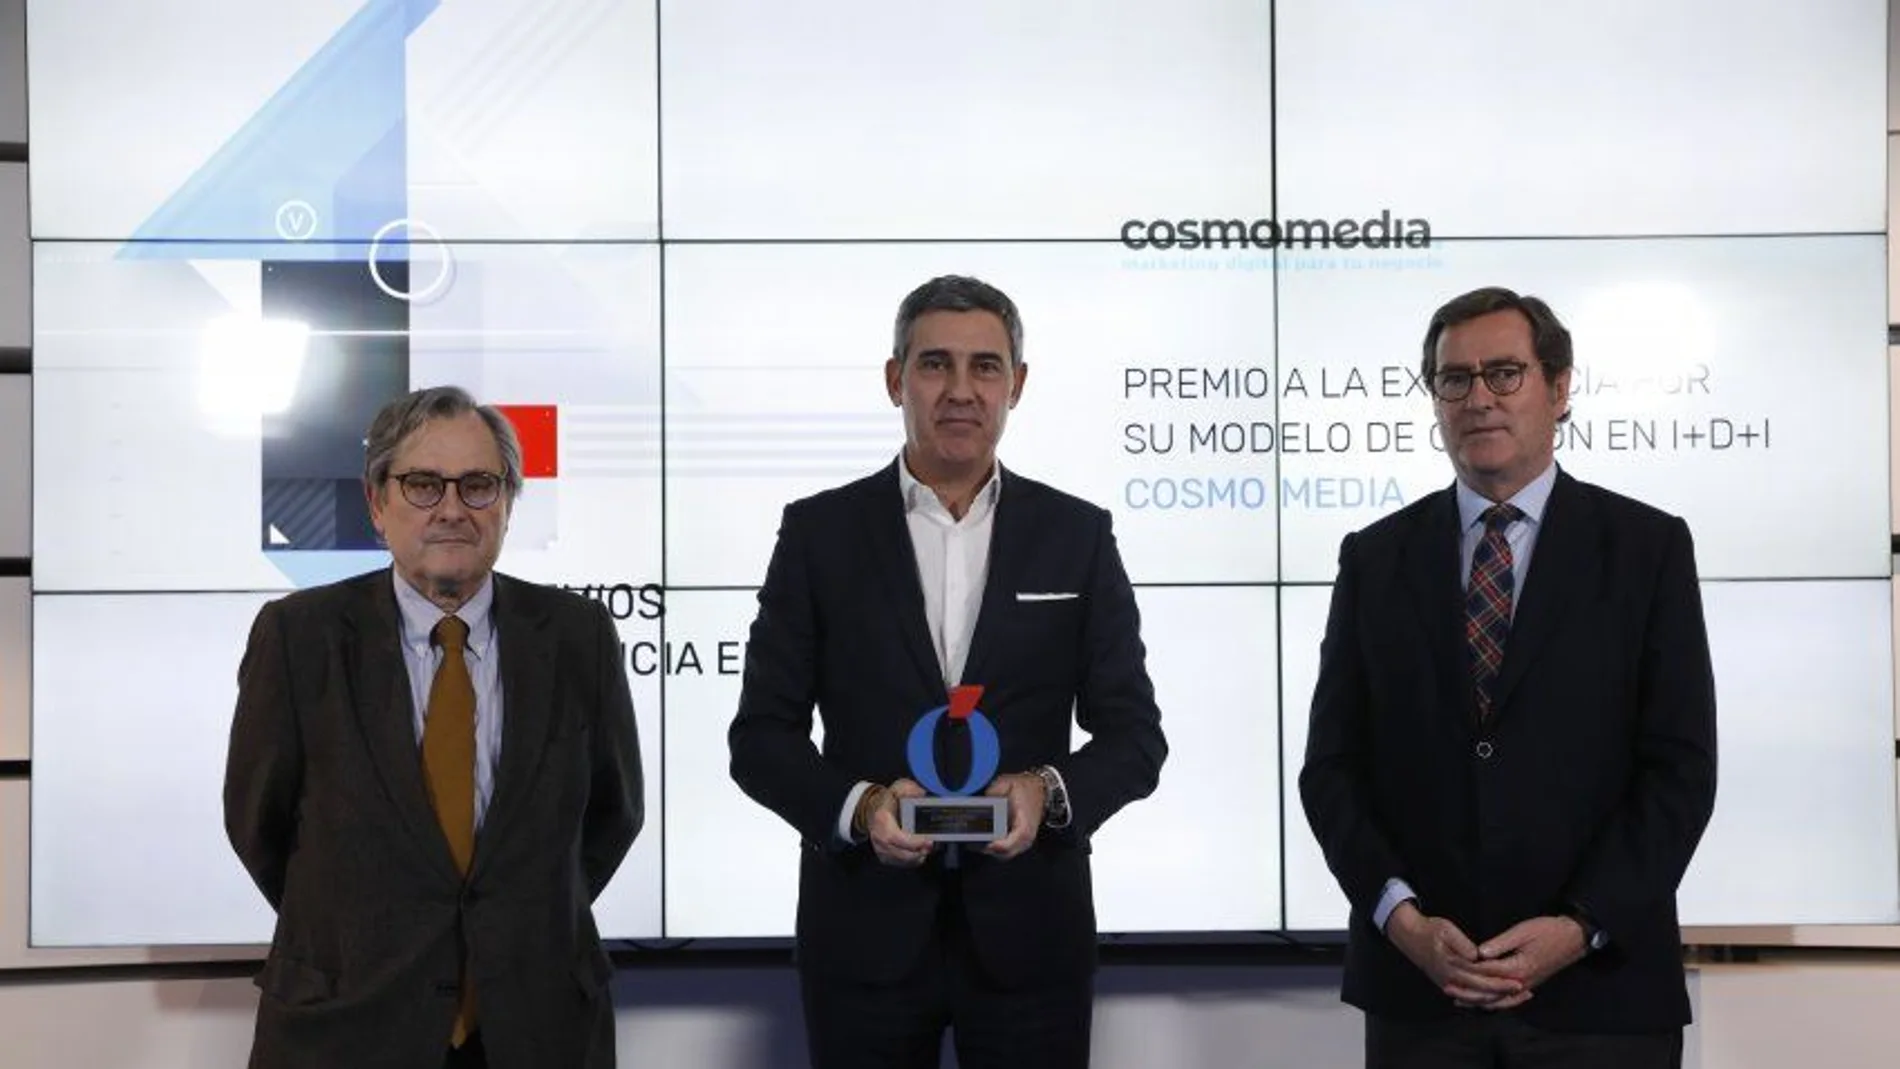 El CEO de Cosmomedia, José Manuel Fuentes, recibe el galardón de manos de Francisco Marhuenda y Antonio Garamendi